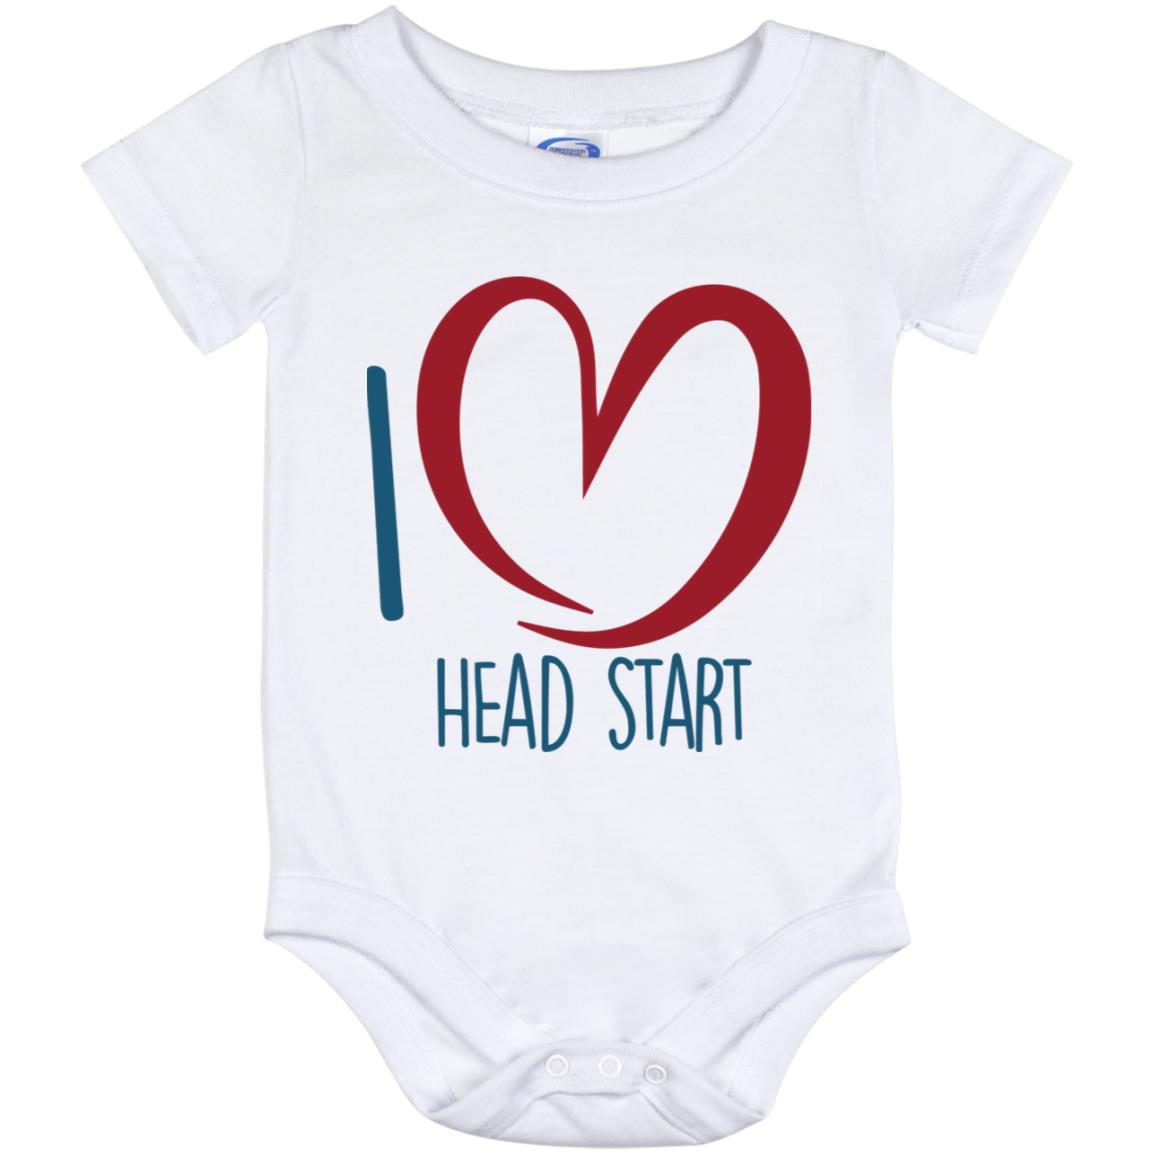 I Love Head Start 12 month onesie